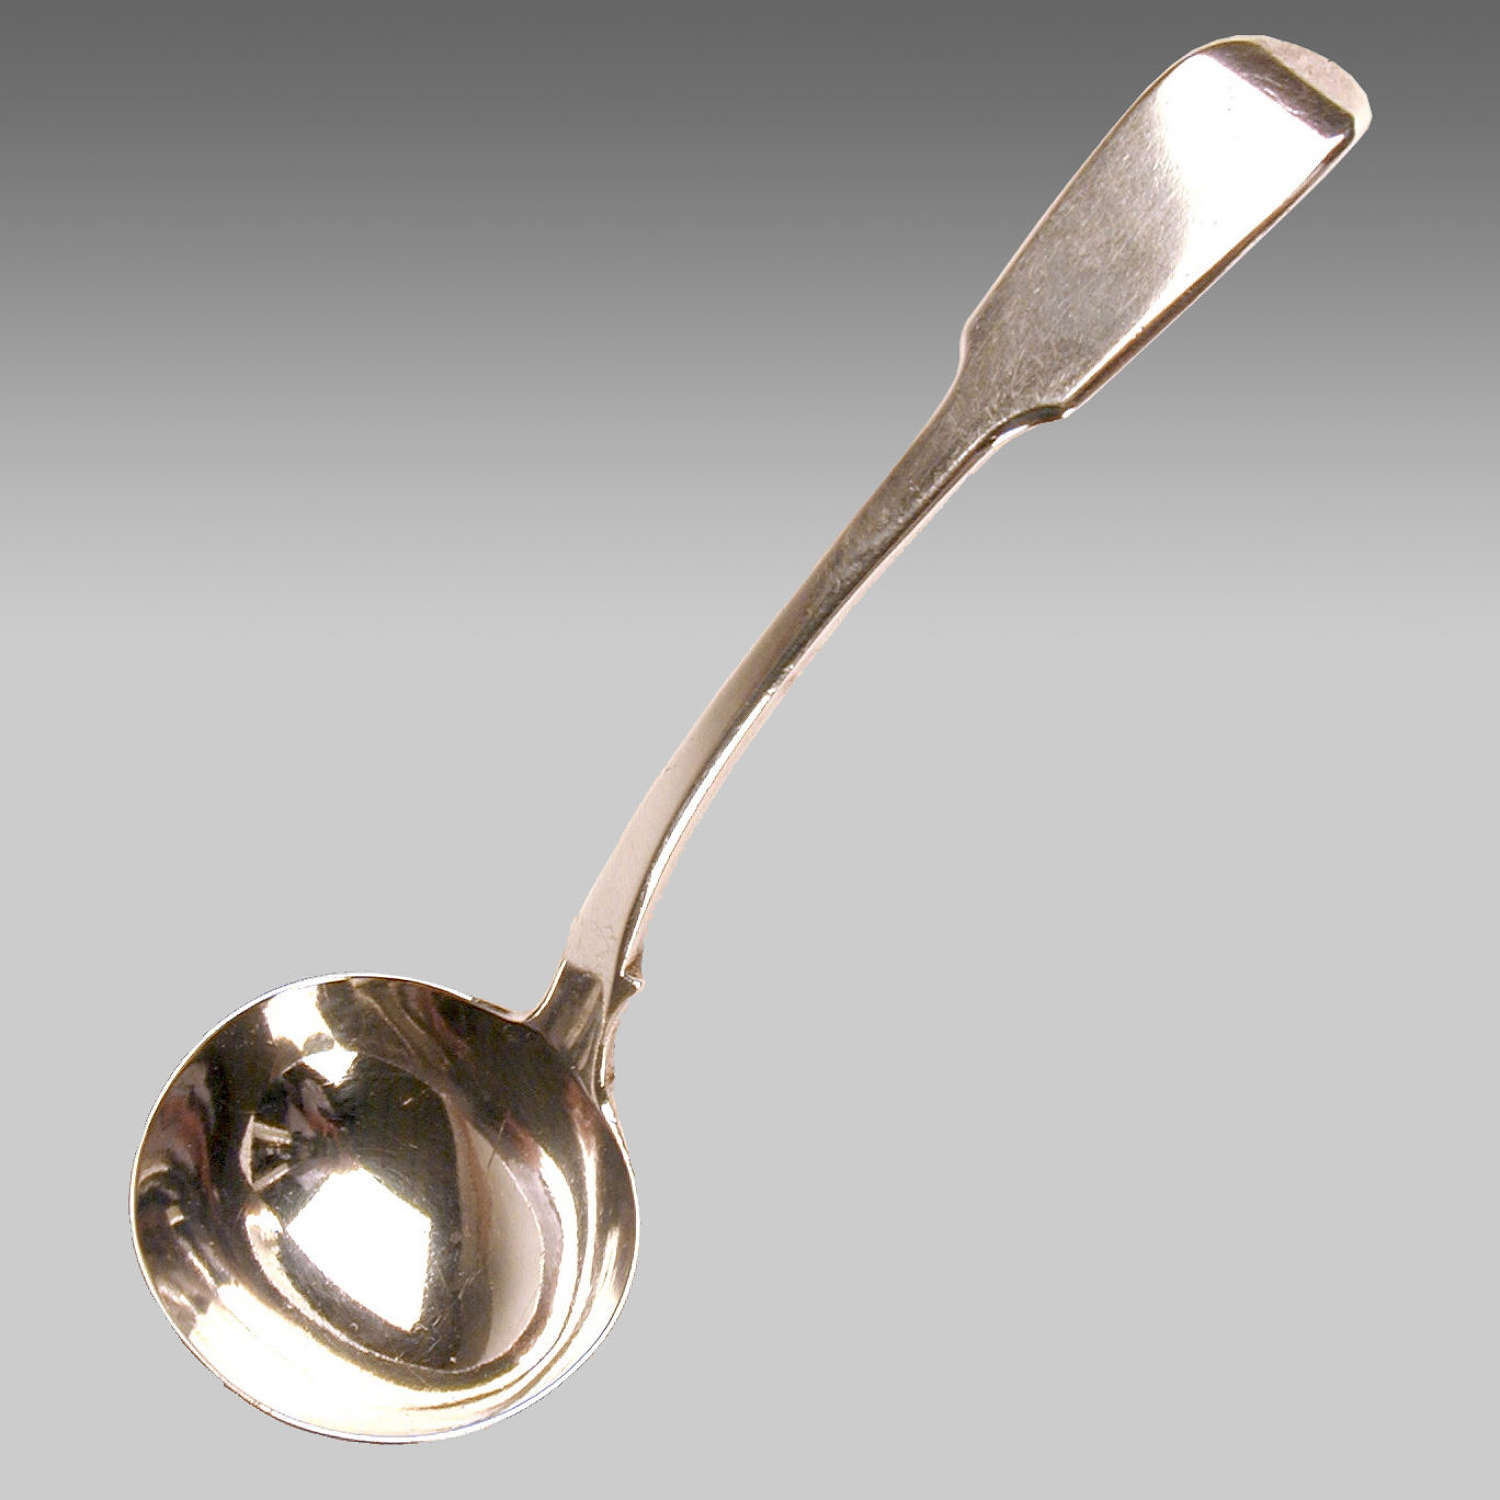 Georgian silver fiddle-pattern ladle